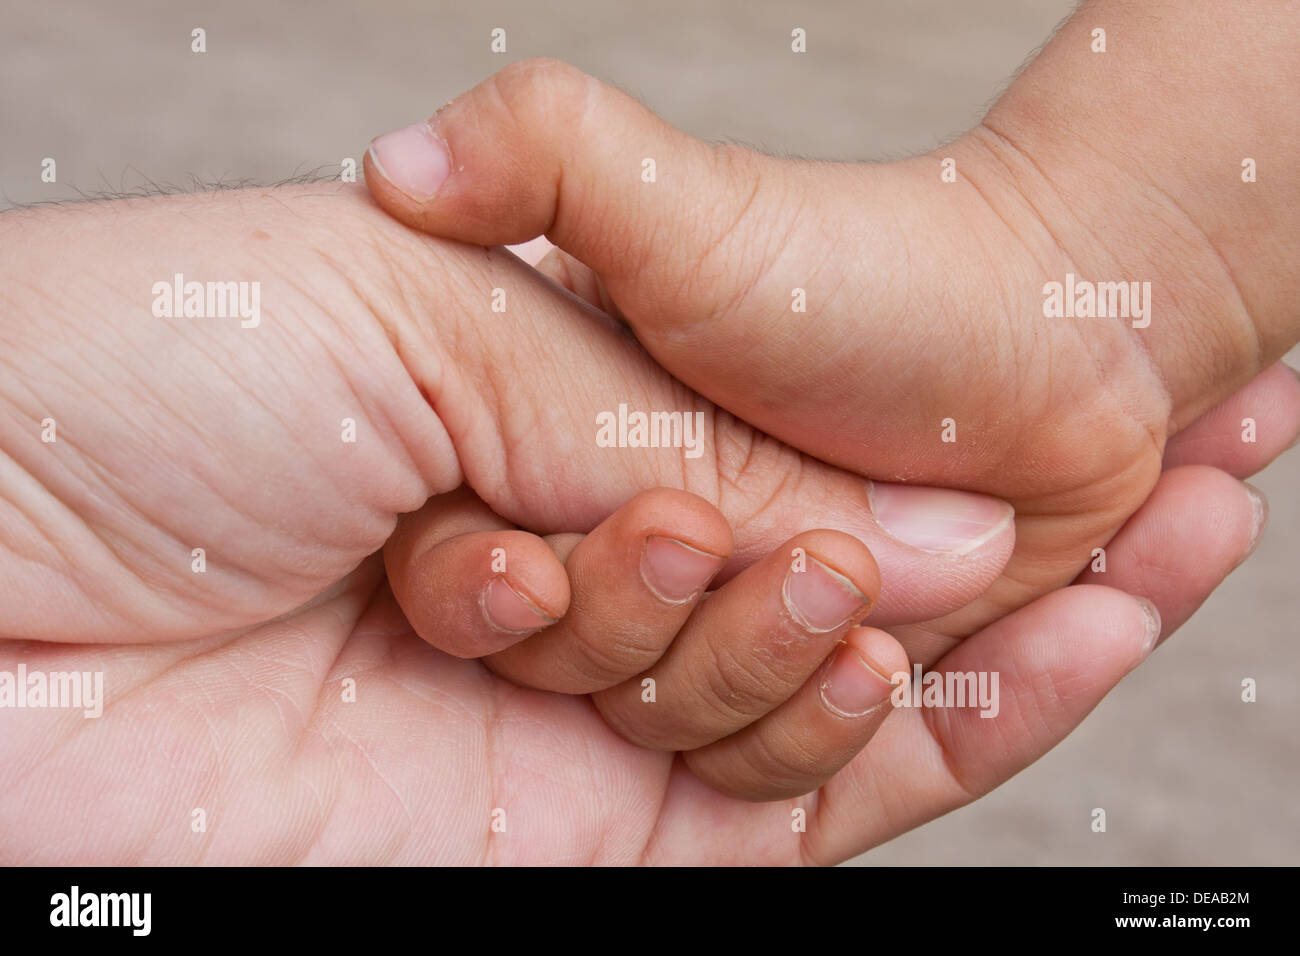 L'aide du bras soins du corps caresse bébé enfant enfance famille père  confort main doigt ongle du pouce geste fragile tendresse Photo Stock -  Alamy